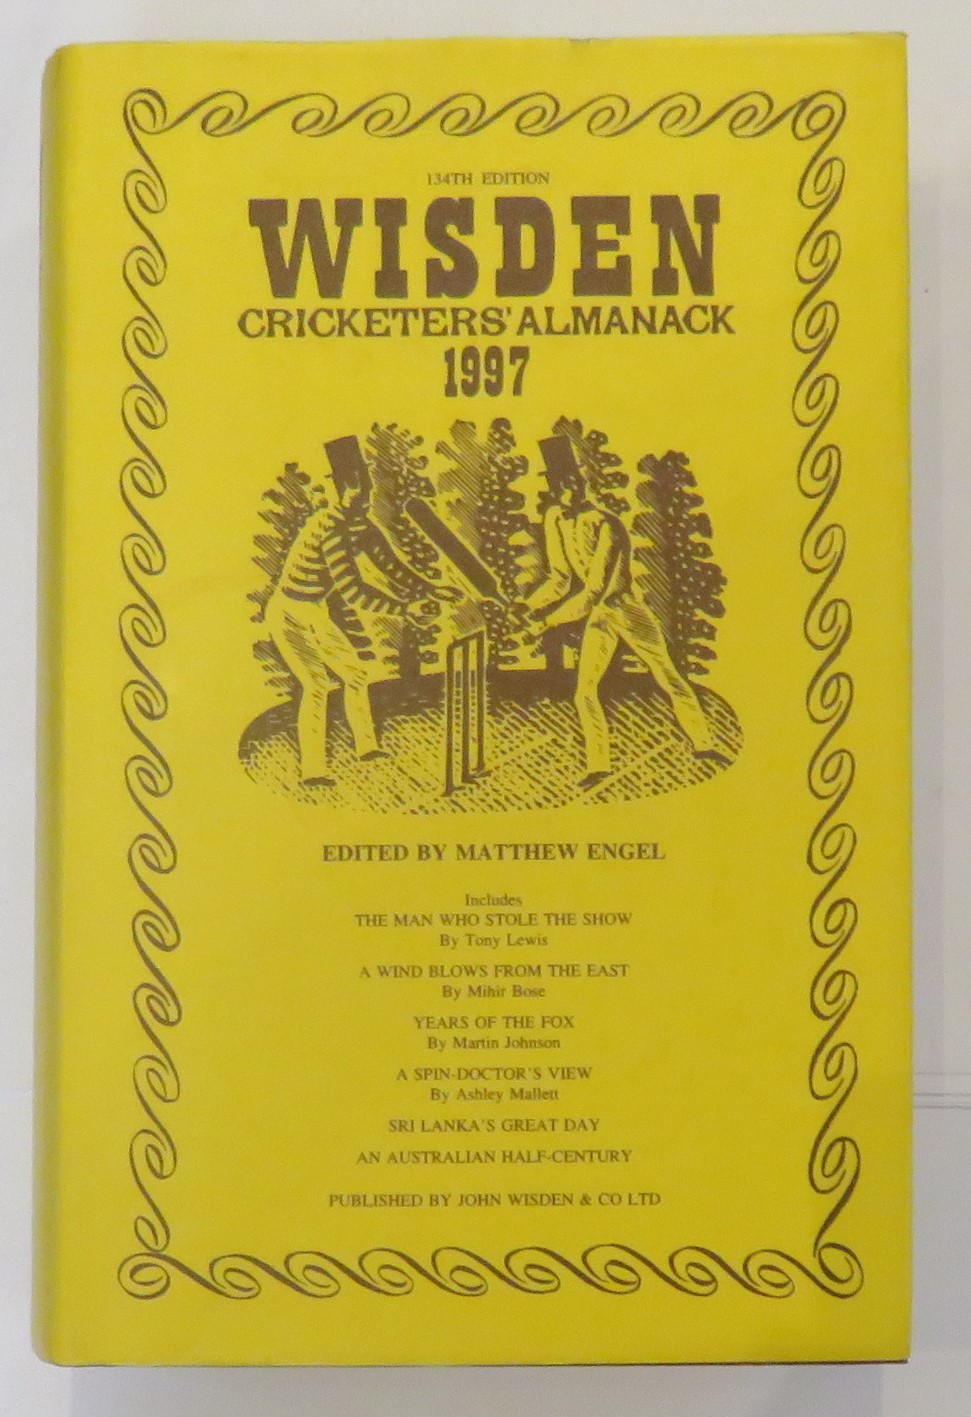 Wisden Cricketers' Almanack 1997